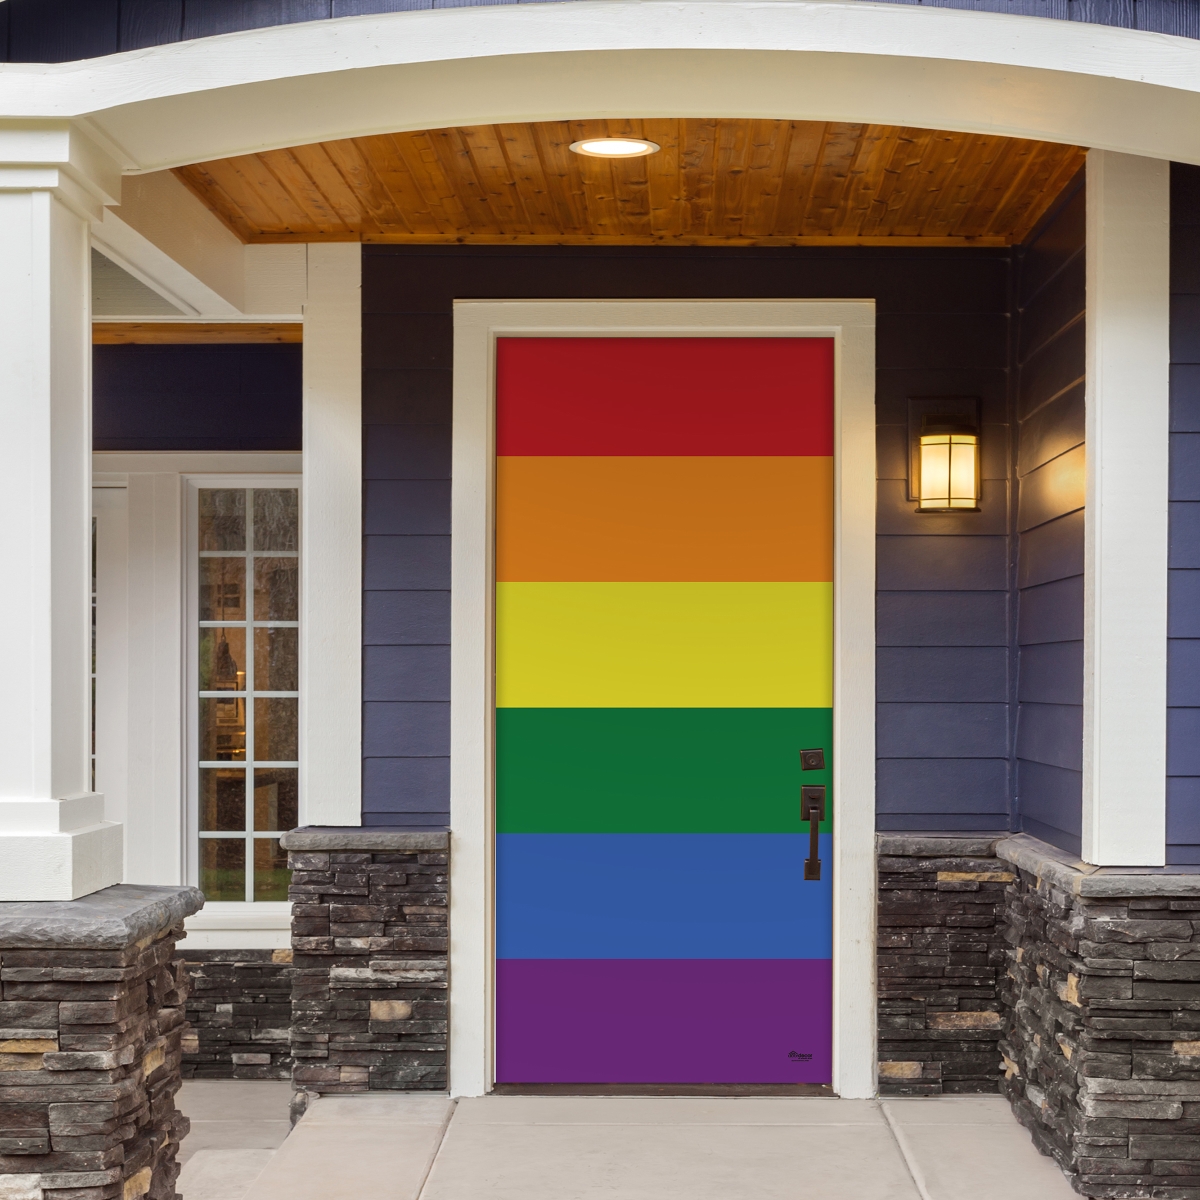 285906prde-001 36 X 80 In. Original Pride Outdoor Lgbt Front Door Mural Sign Banner Decor, Multi Color